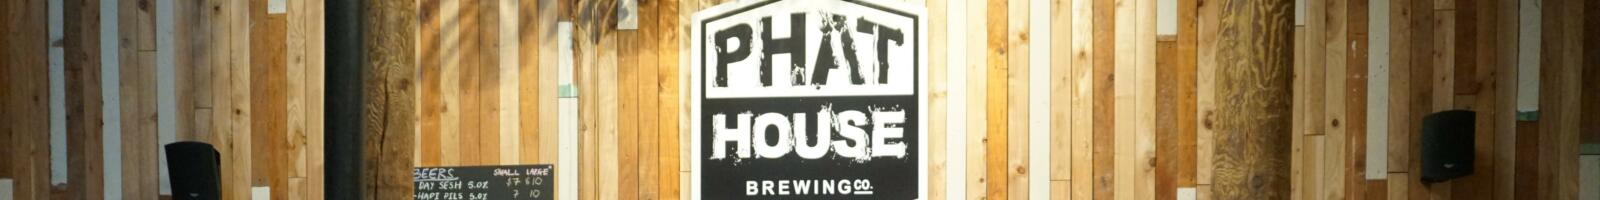 Phat House